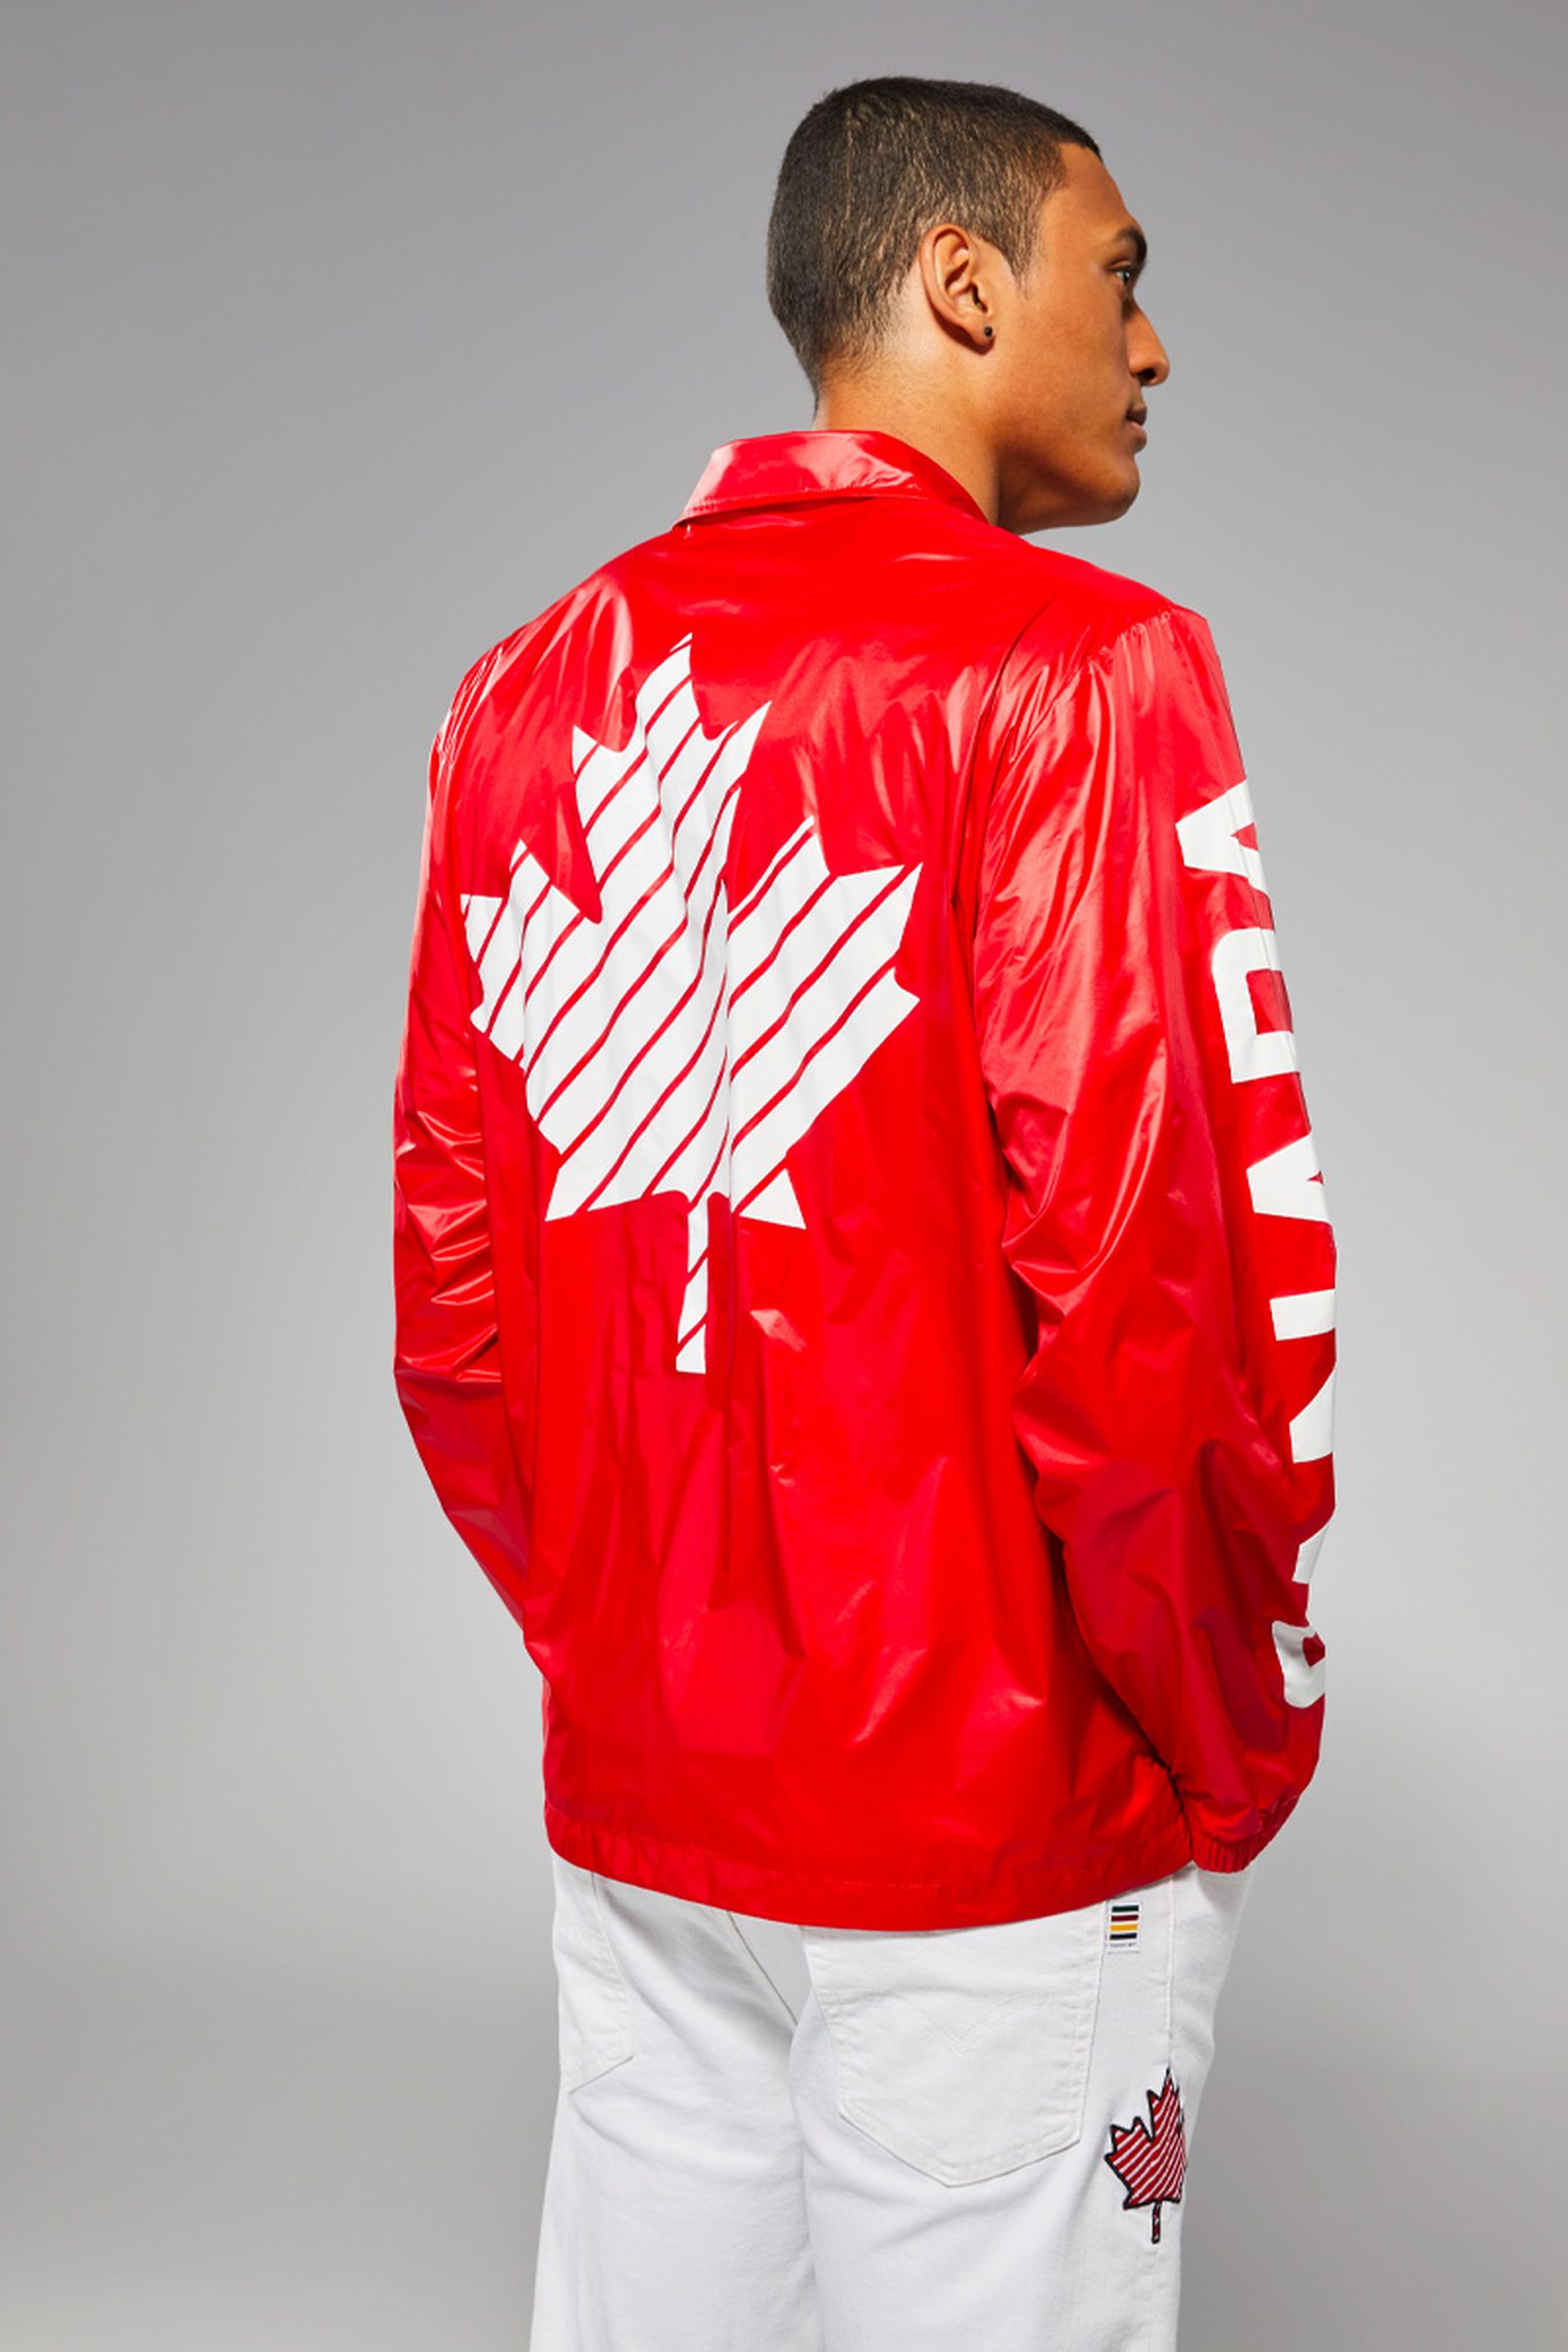 canada-olympic-uniform-denim-jacket-02